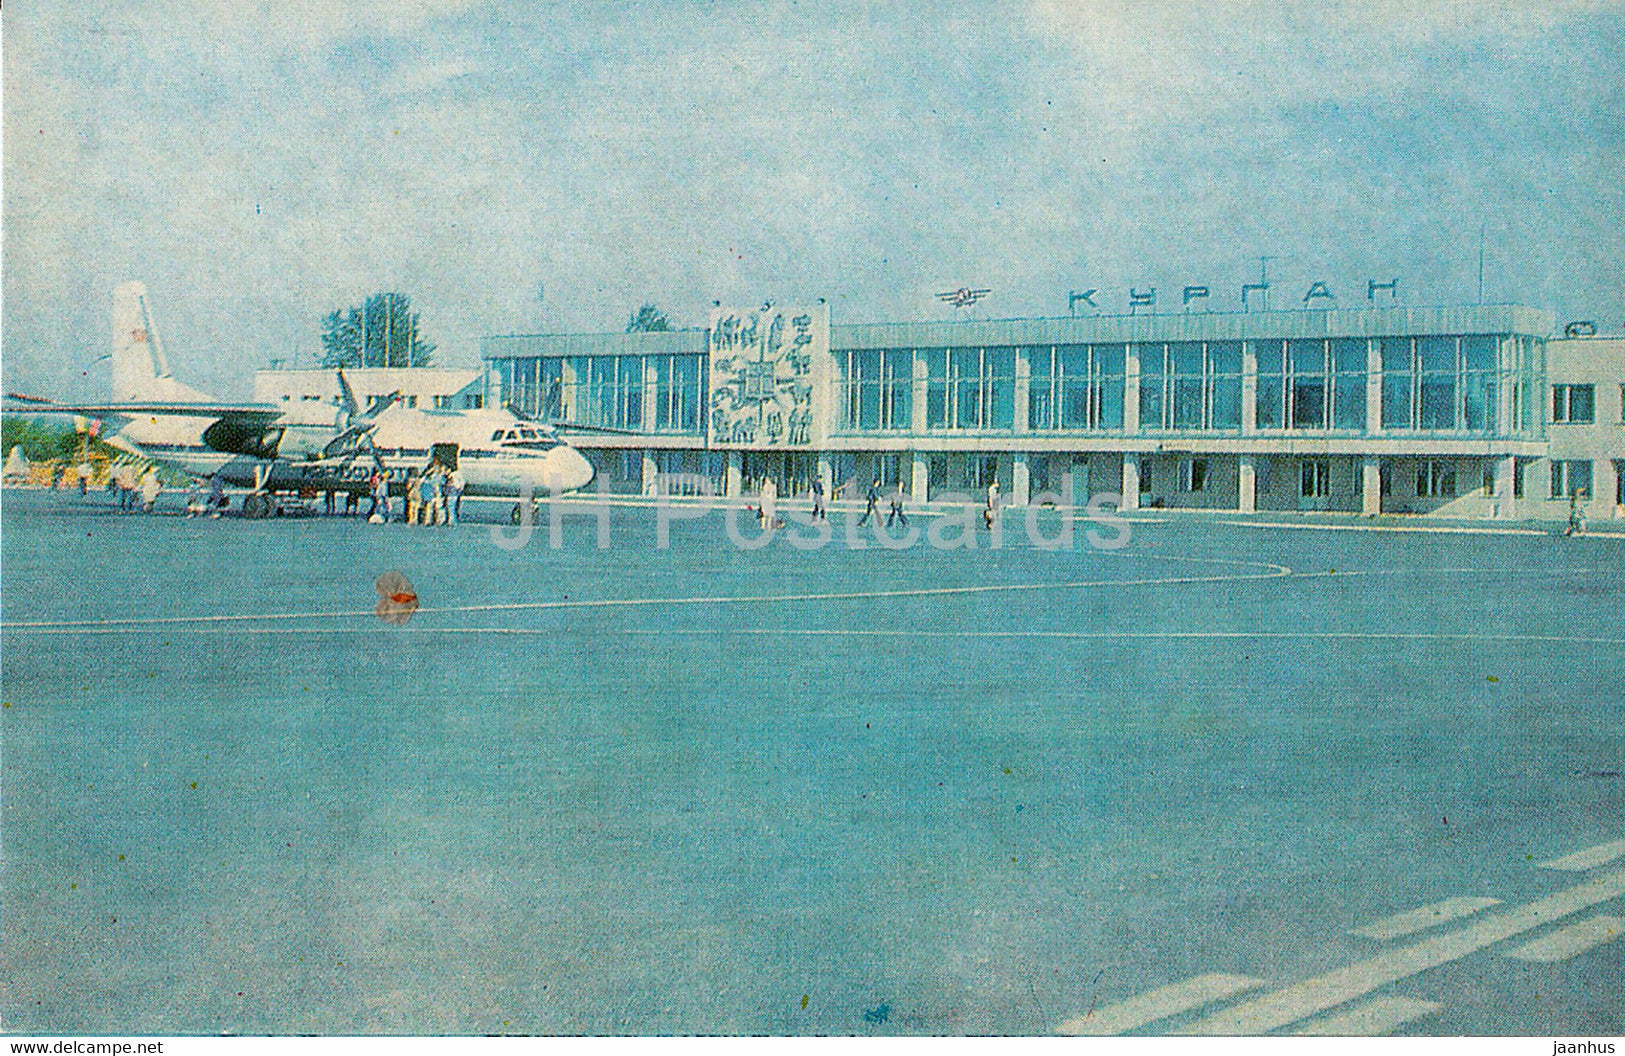 Kurgan - airport - airplane - plane - Turist - 1982 - Russia USSR - unused - JH Postcards